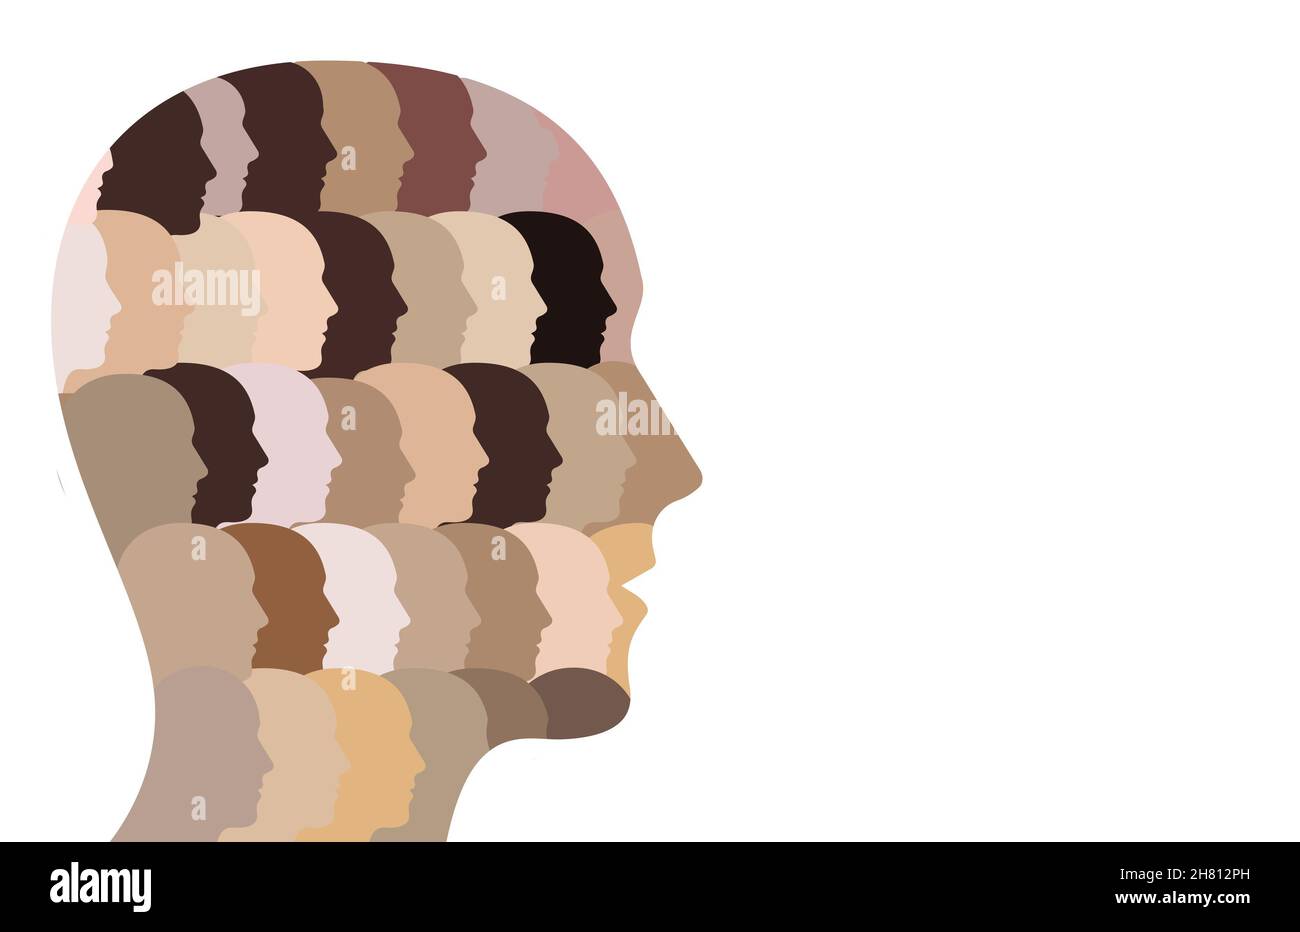 Modèle d'un groupe de personnes diverses avec différentes tonalités de peau qui constitue une tête multiculturelle. Banque D'Images